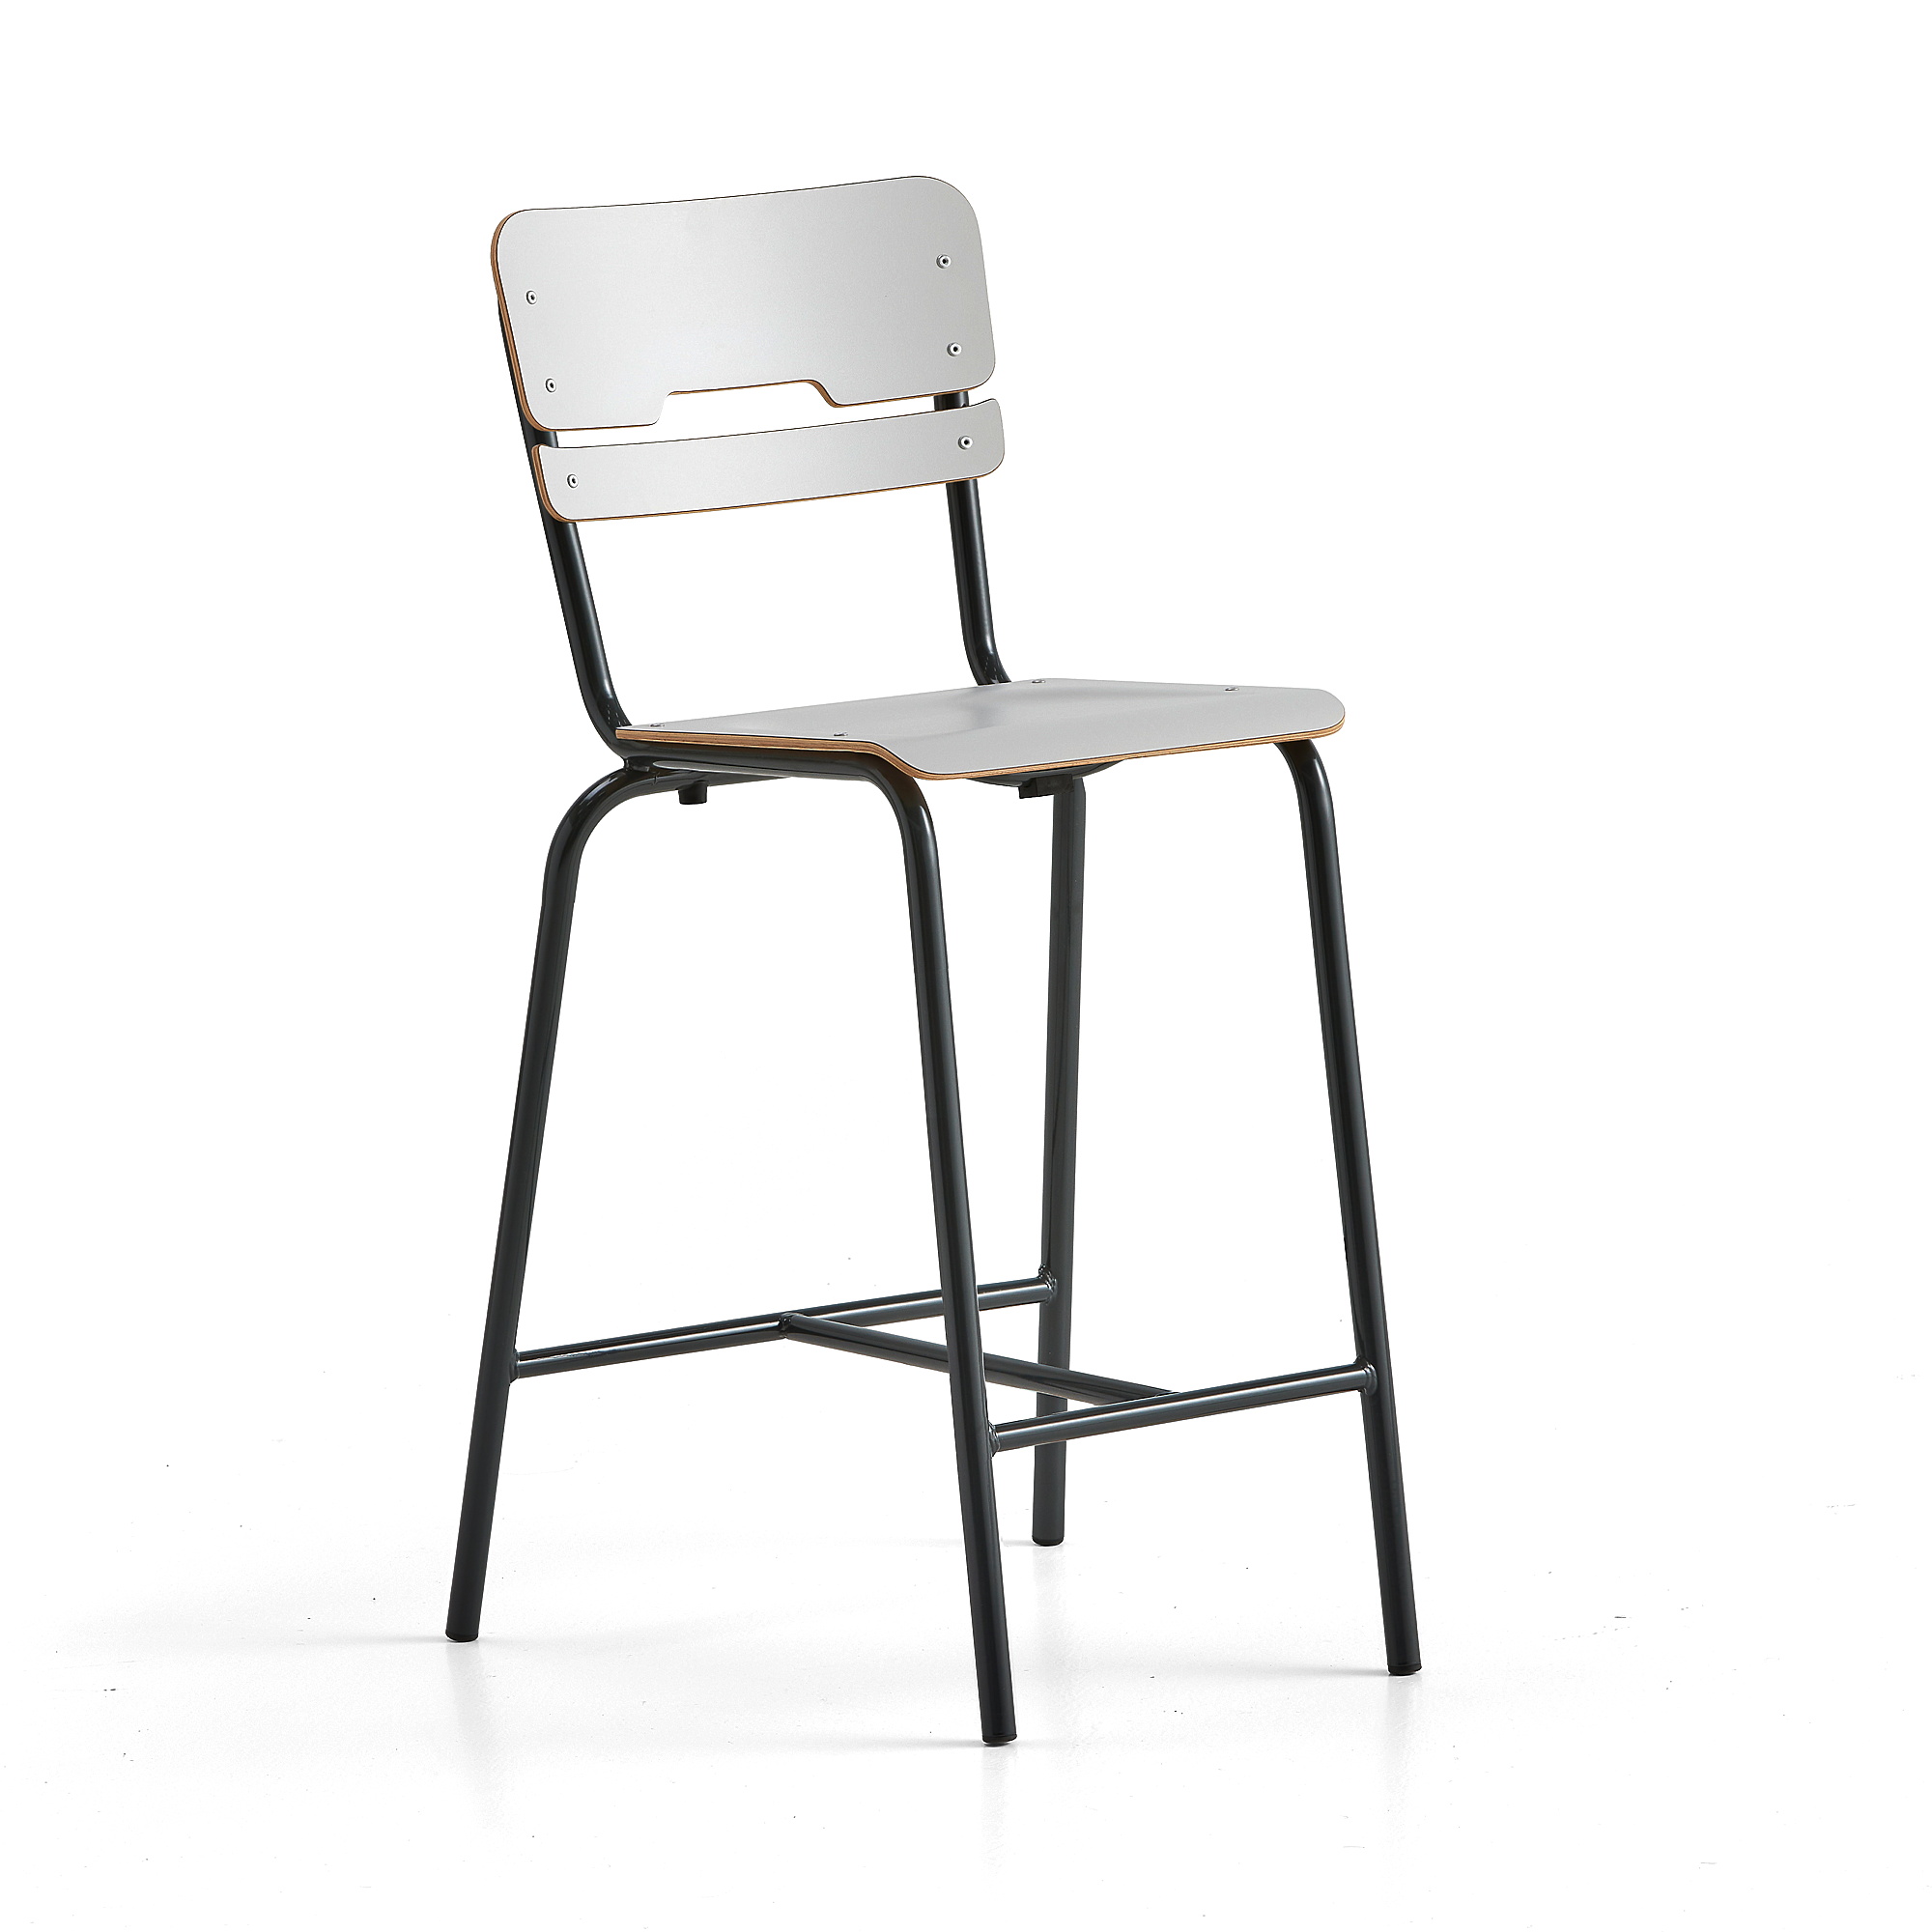 Školní židle SCIENTIA, sedák 360x360 mm, výška 650 mm, antracitová/šedá